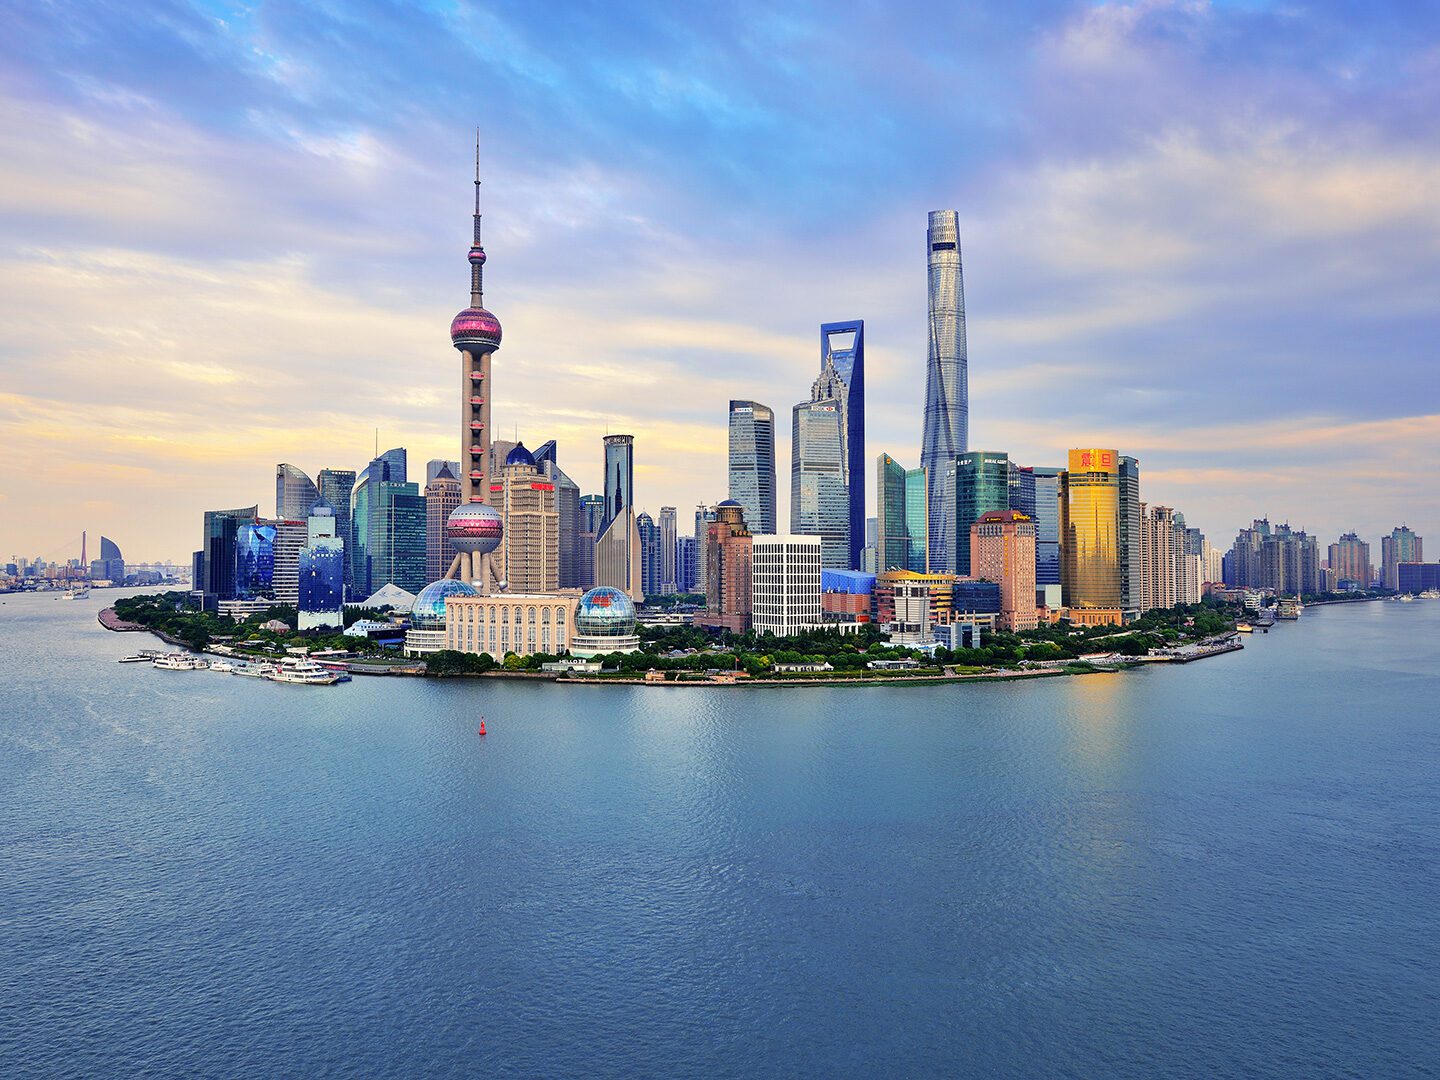 Skyline von Shanghai, der größten Wirtschaftsmetropole in China